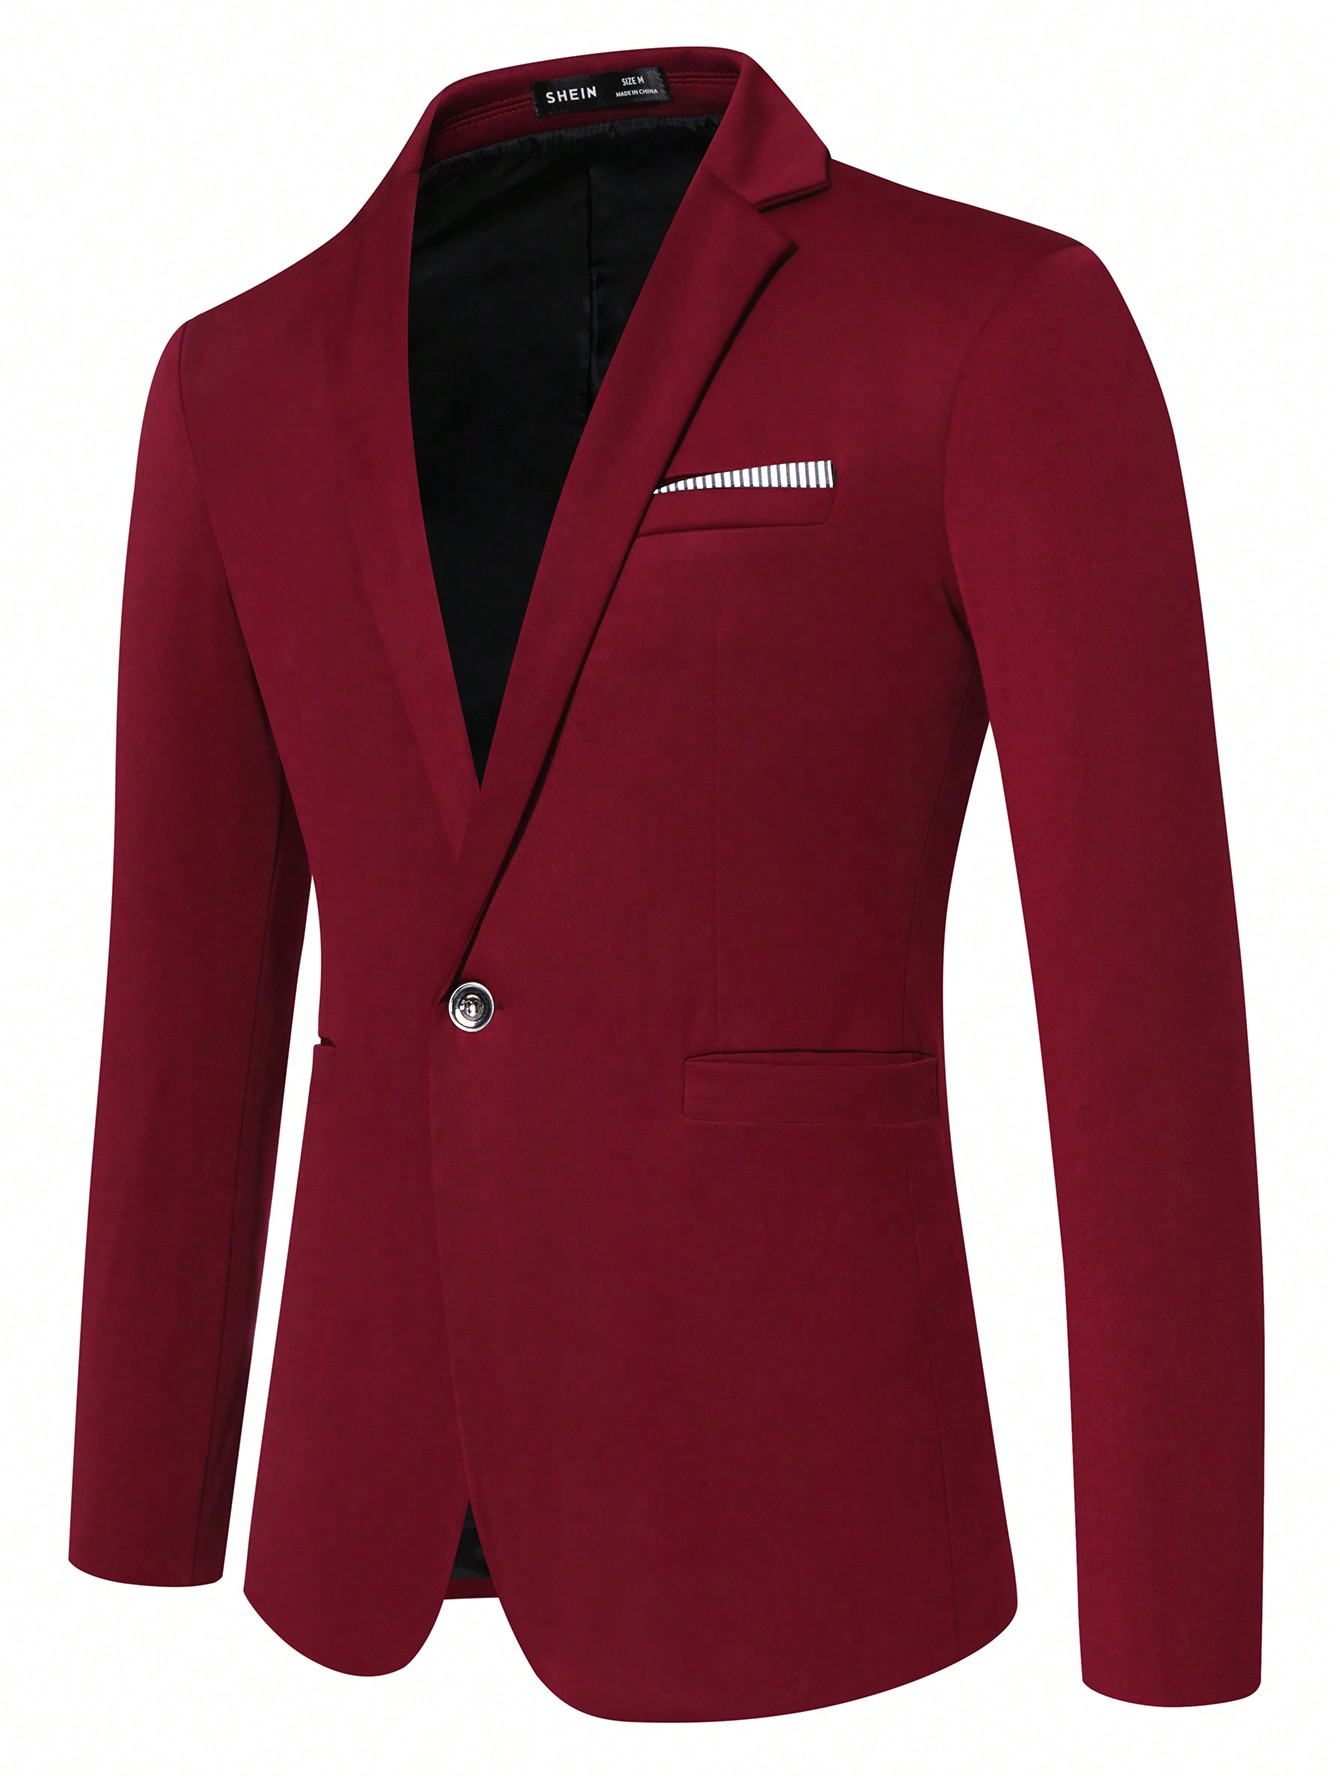 Мужской пиджак с длинными рукавами и зубчатыми лацканами Manfinity Mode, красный